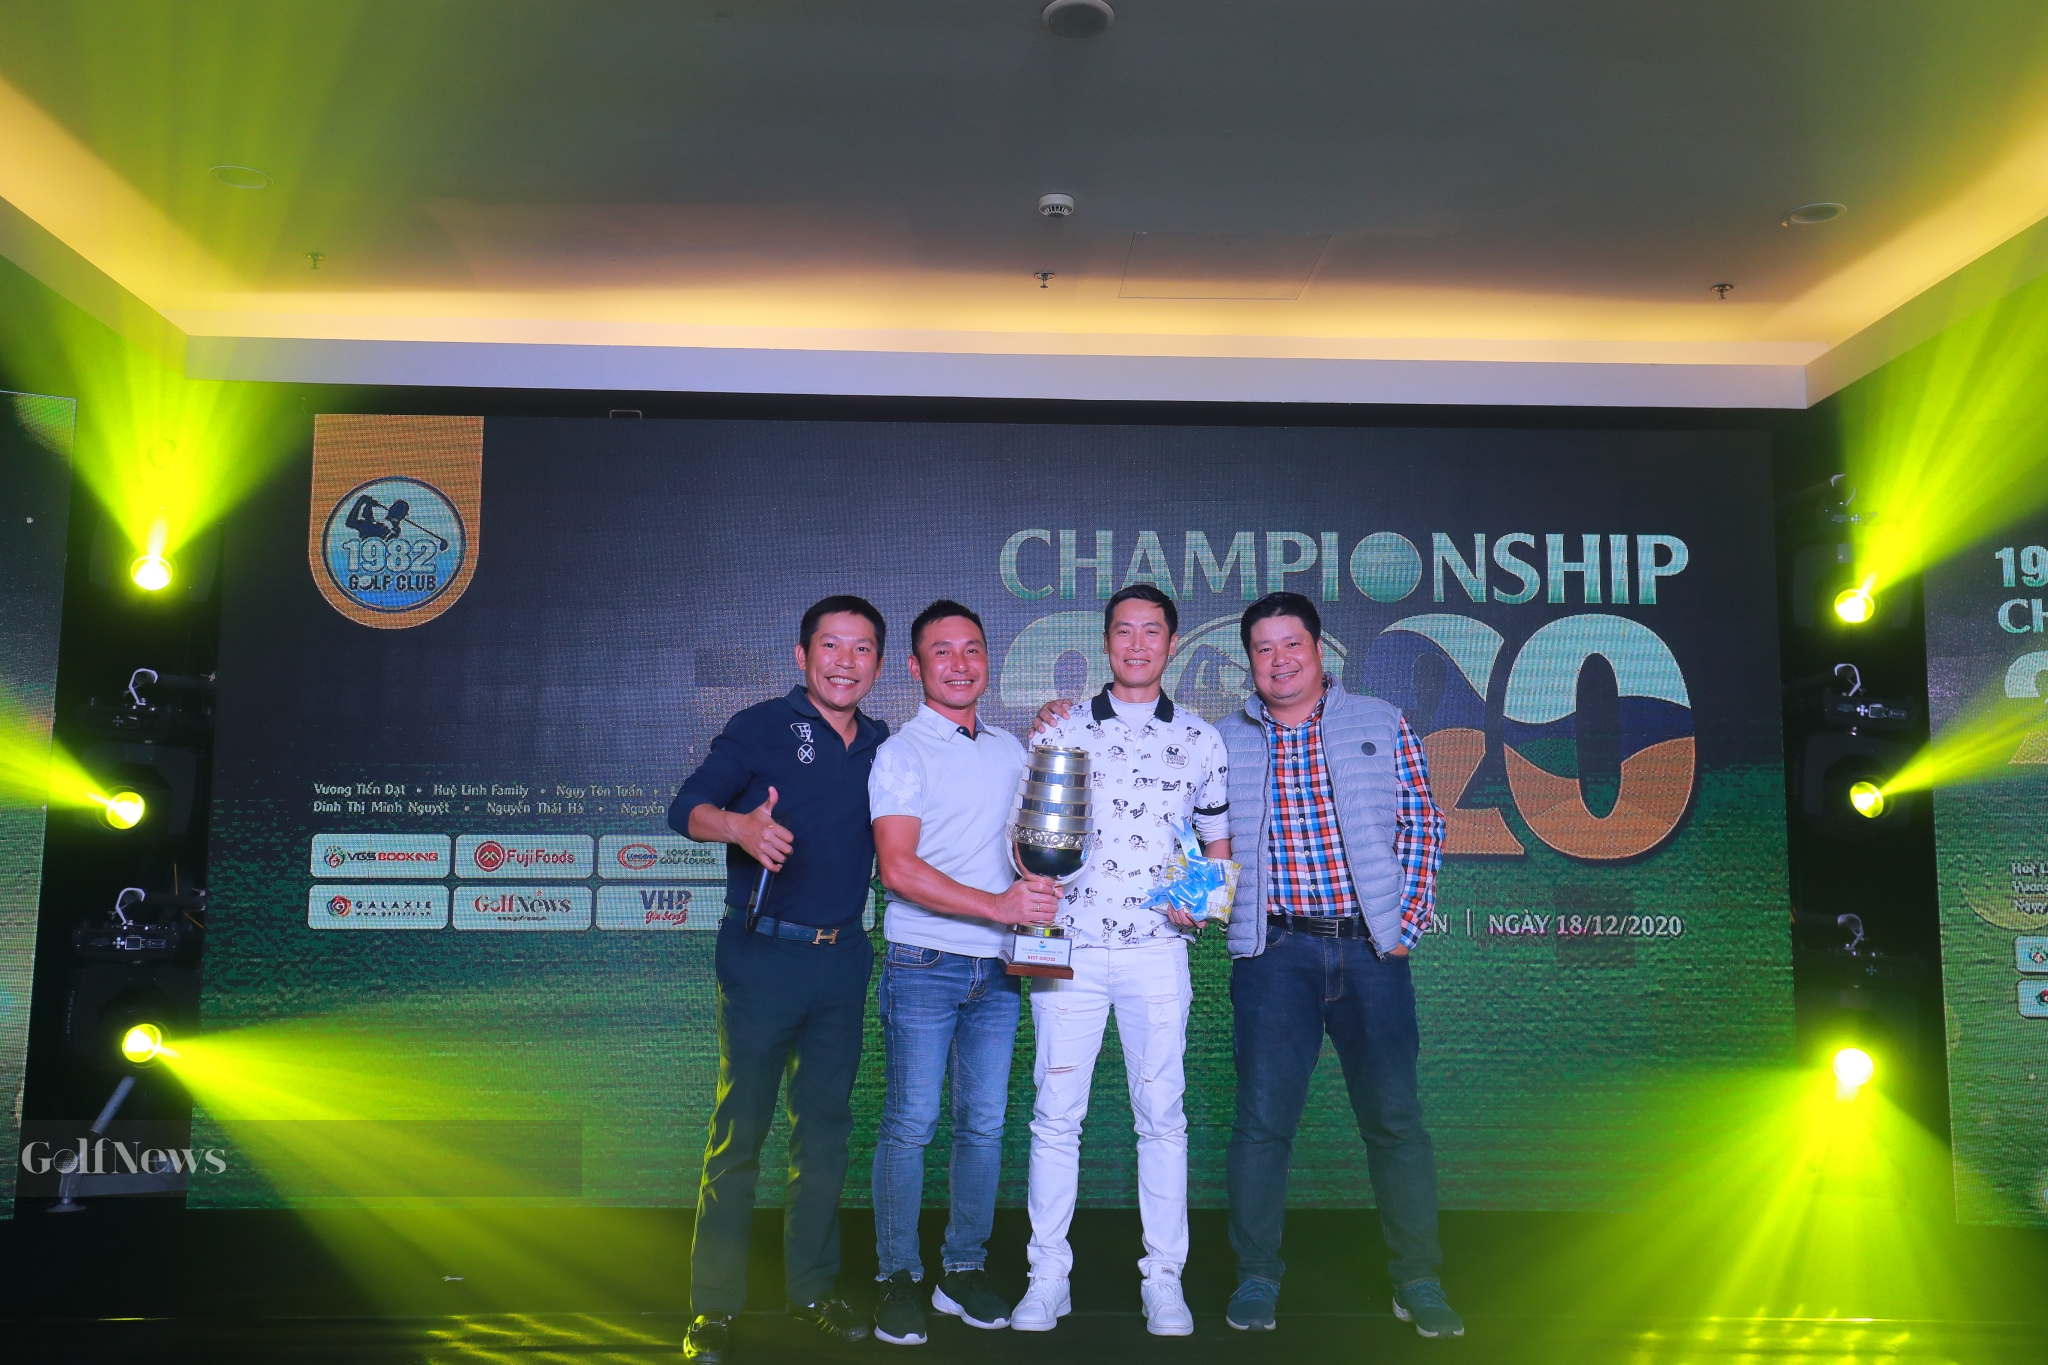 Golfer Nguyễn Đức Hoàng vô địch giải 1982 Club Championship 2020